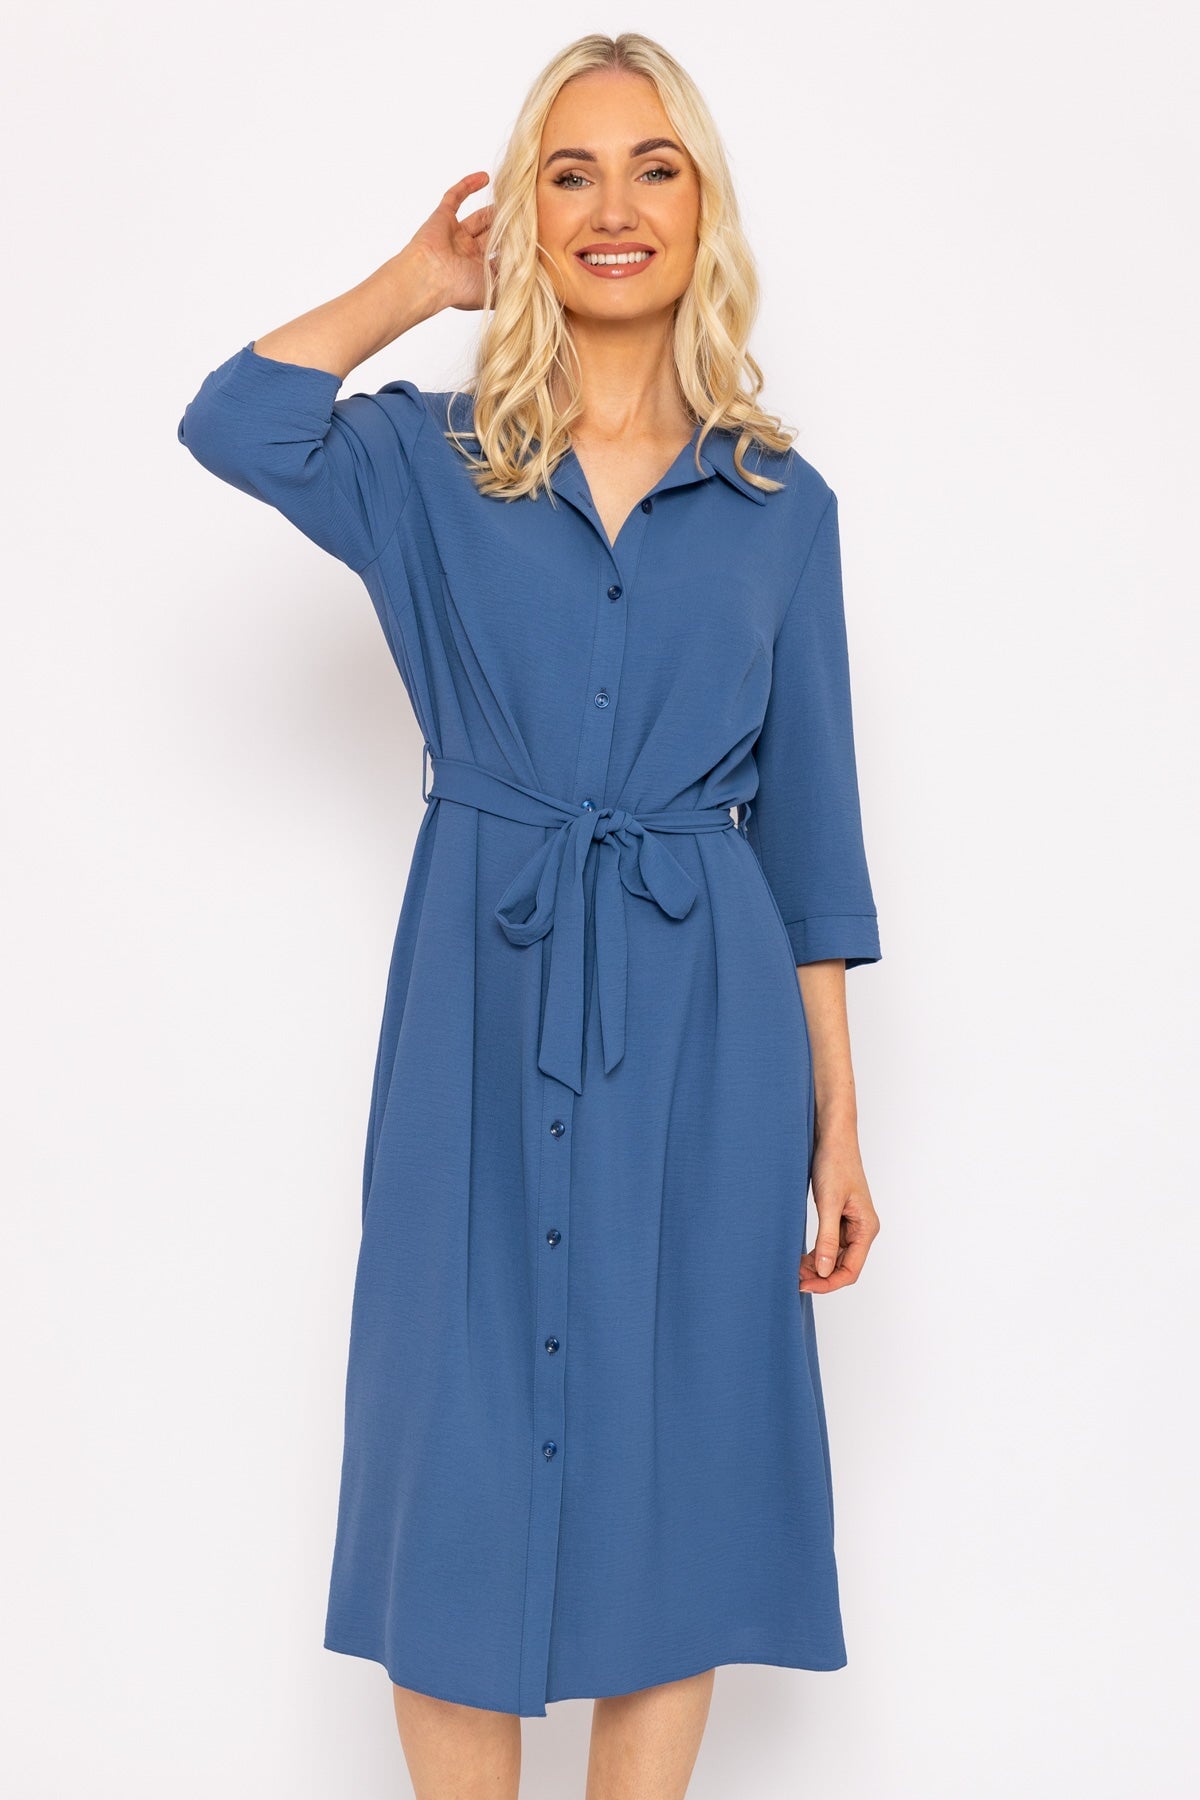 Blue Belted Shirt Dress | Women's Dresses | Carraig Donn